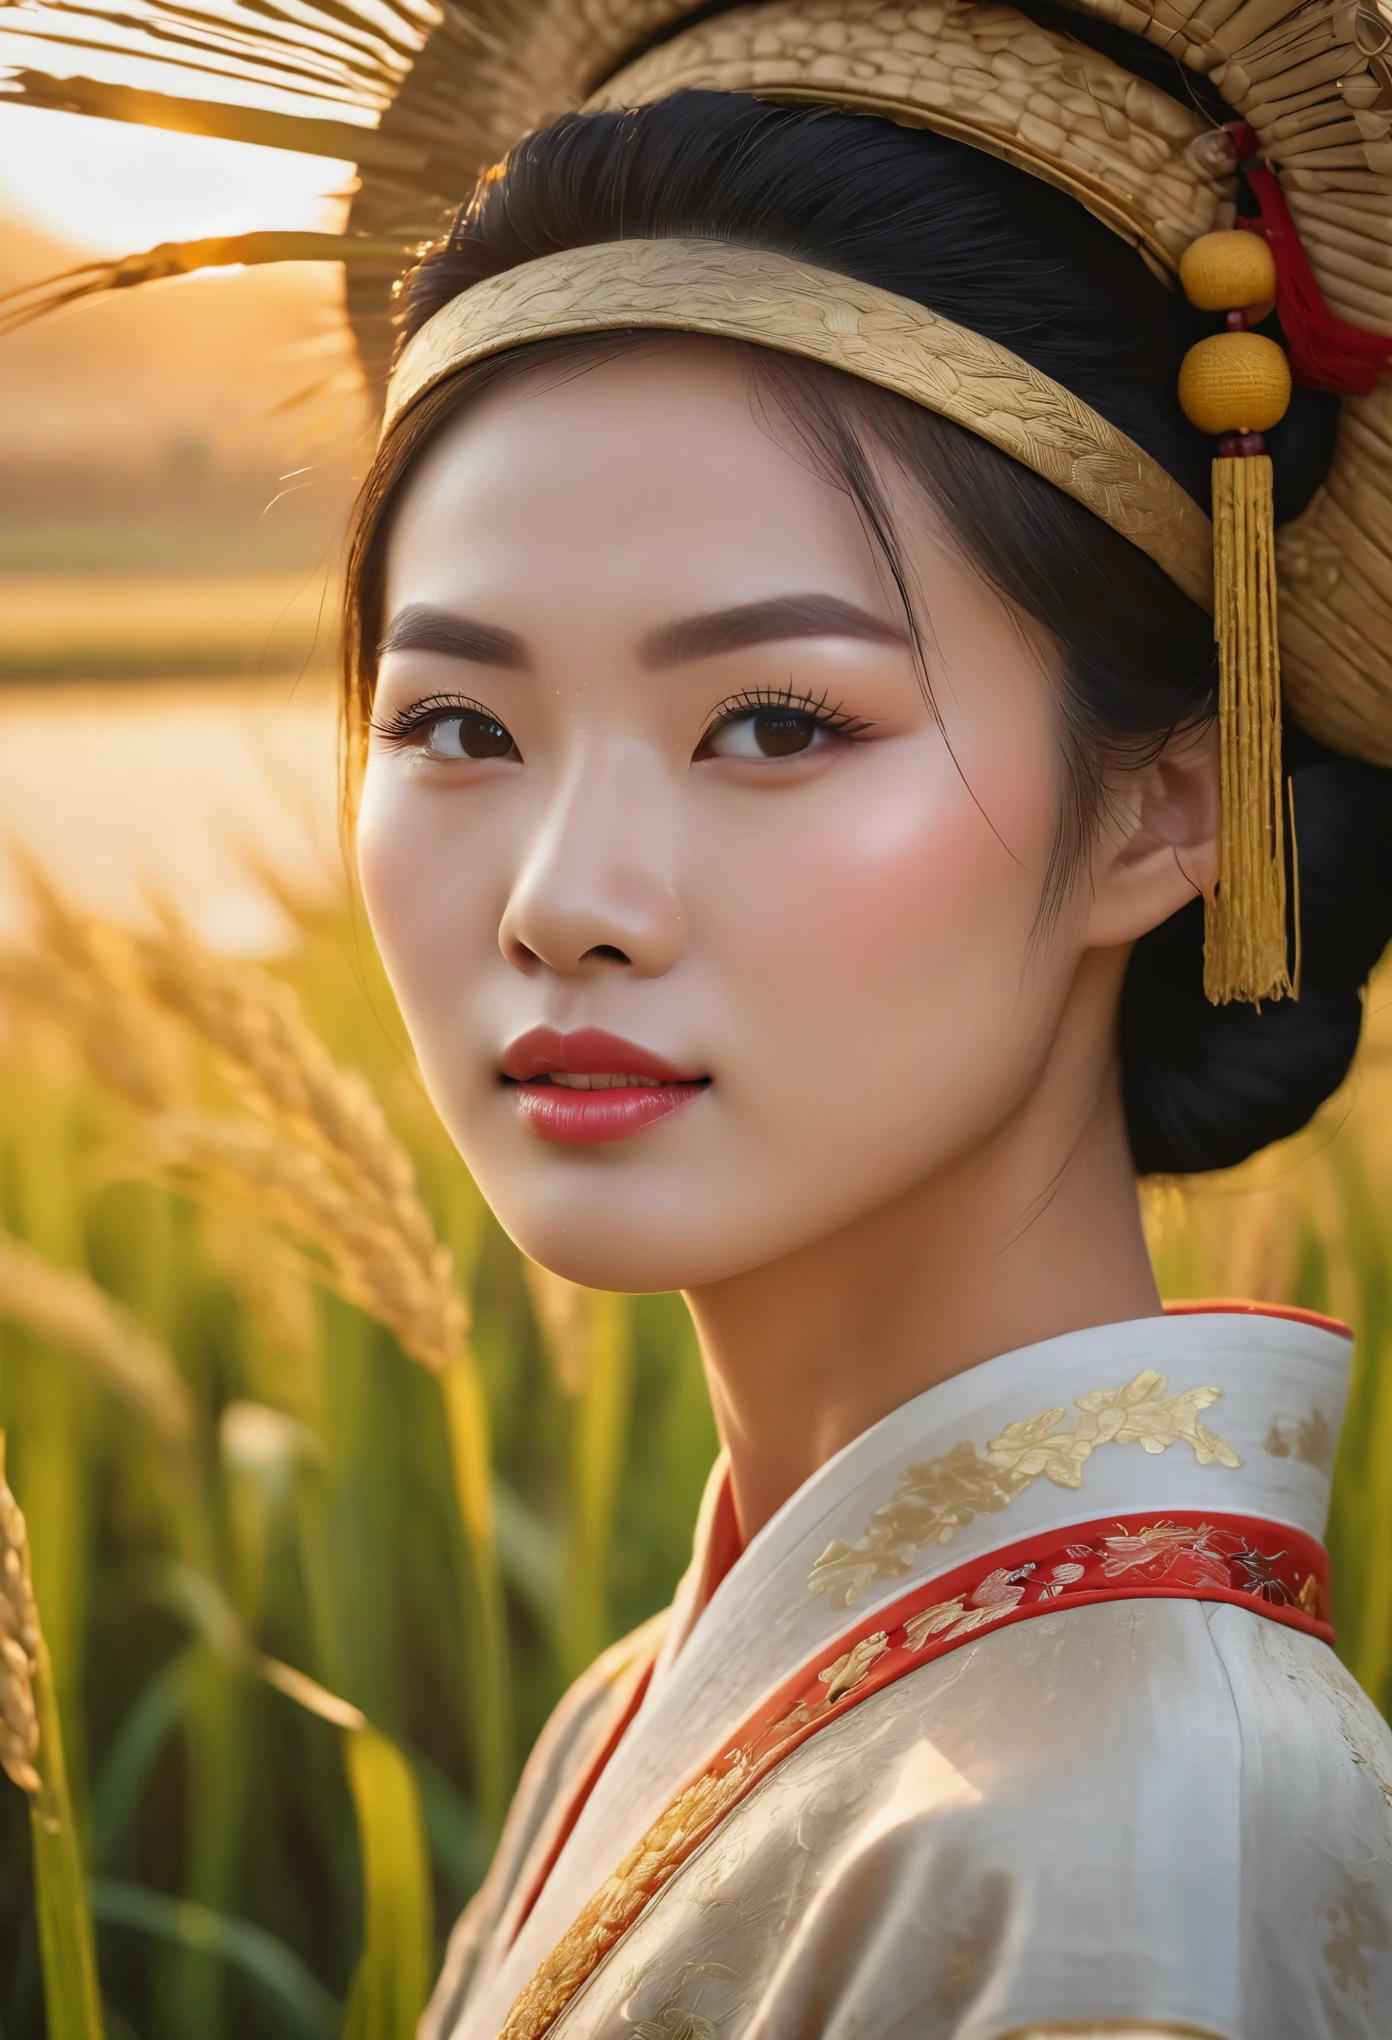 中国稻田上空的美丽日出, 中国农民收割水稻, 美丽细致的眼睛, 美丽细致的嘴唇, 极其细致的眼睛和脸部, 长长的睫毛, 中国传统服饰, 宁静的乡村风景, 黄金时段照明, 暖色调, 柔焦, 真实感, 8千, 高分辨率, 杰作, 极其详细, 专业摄影, 鲜艳的色彩, 自然采光, 电影构图